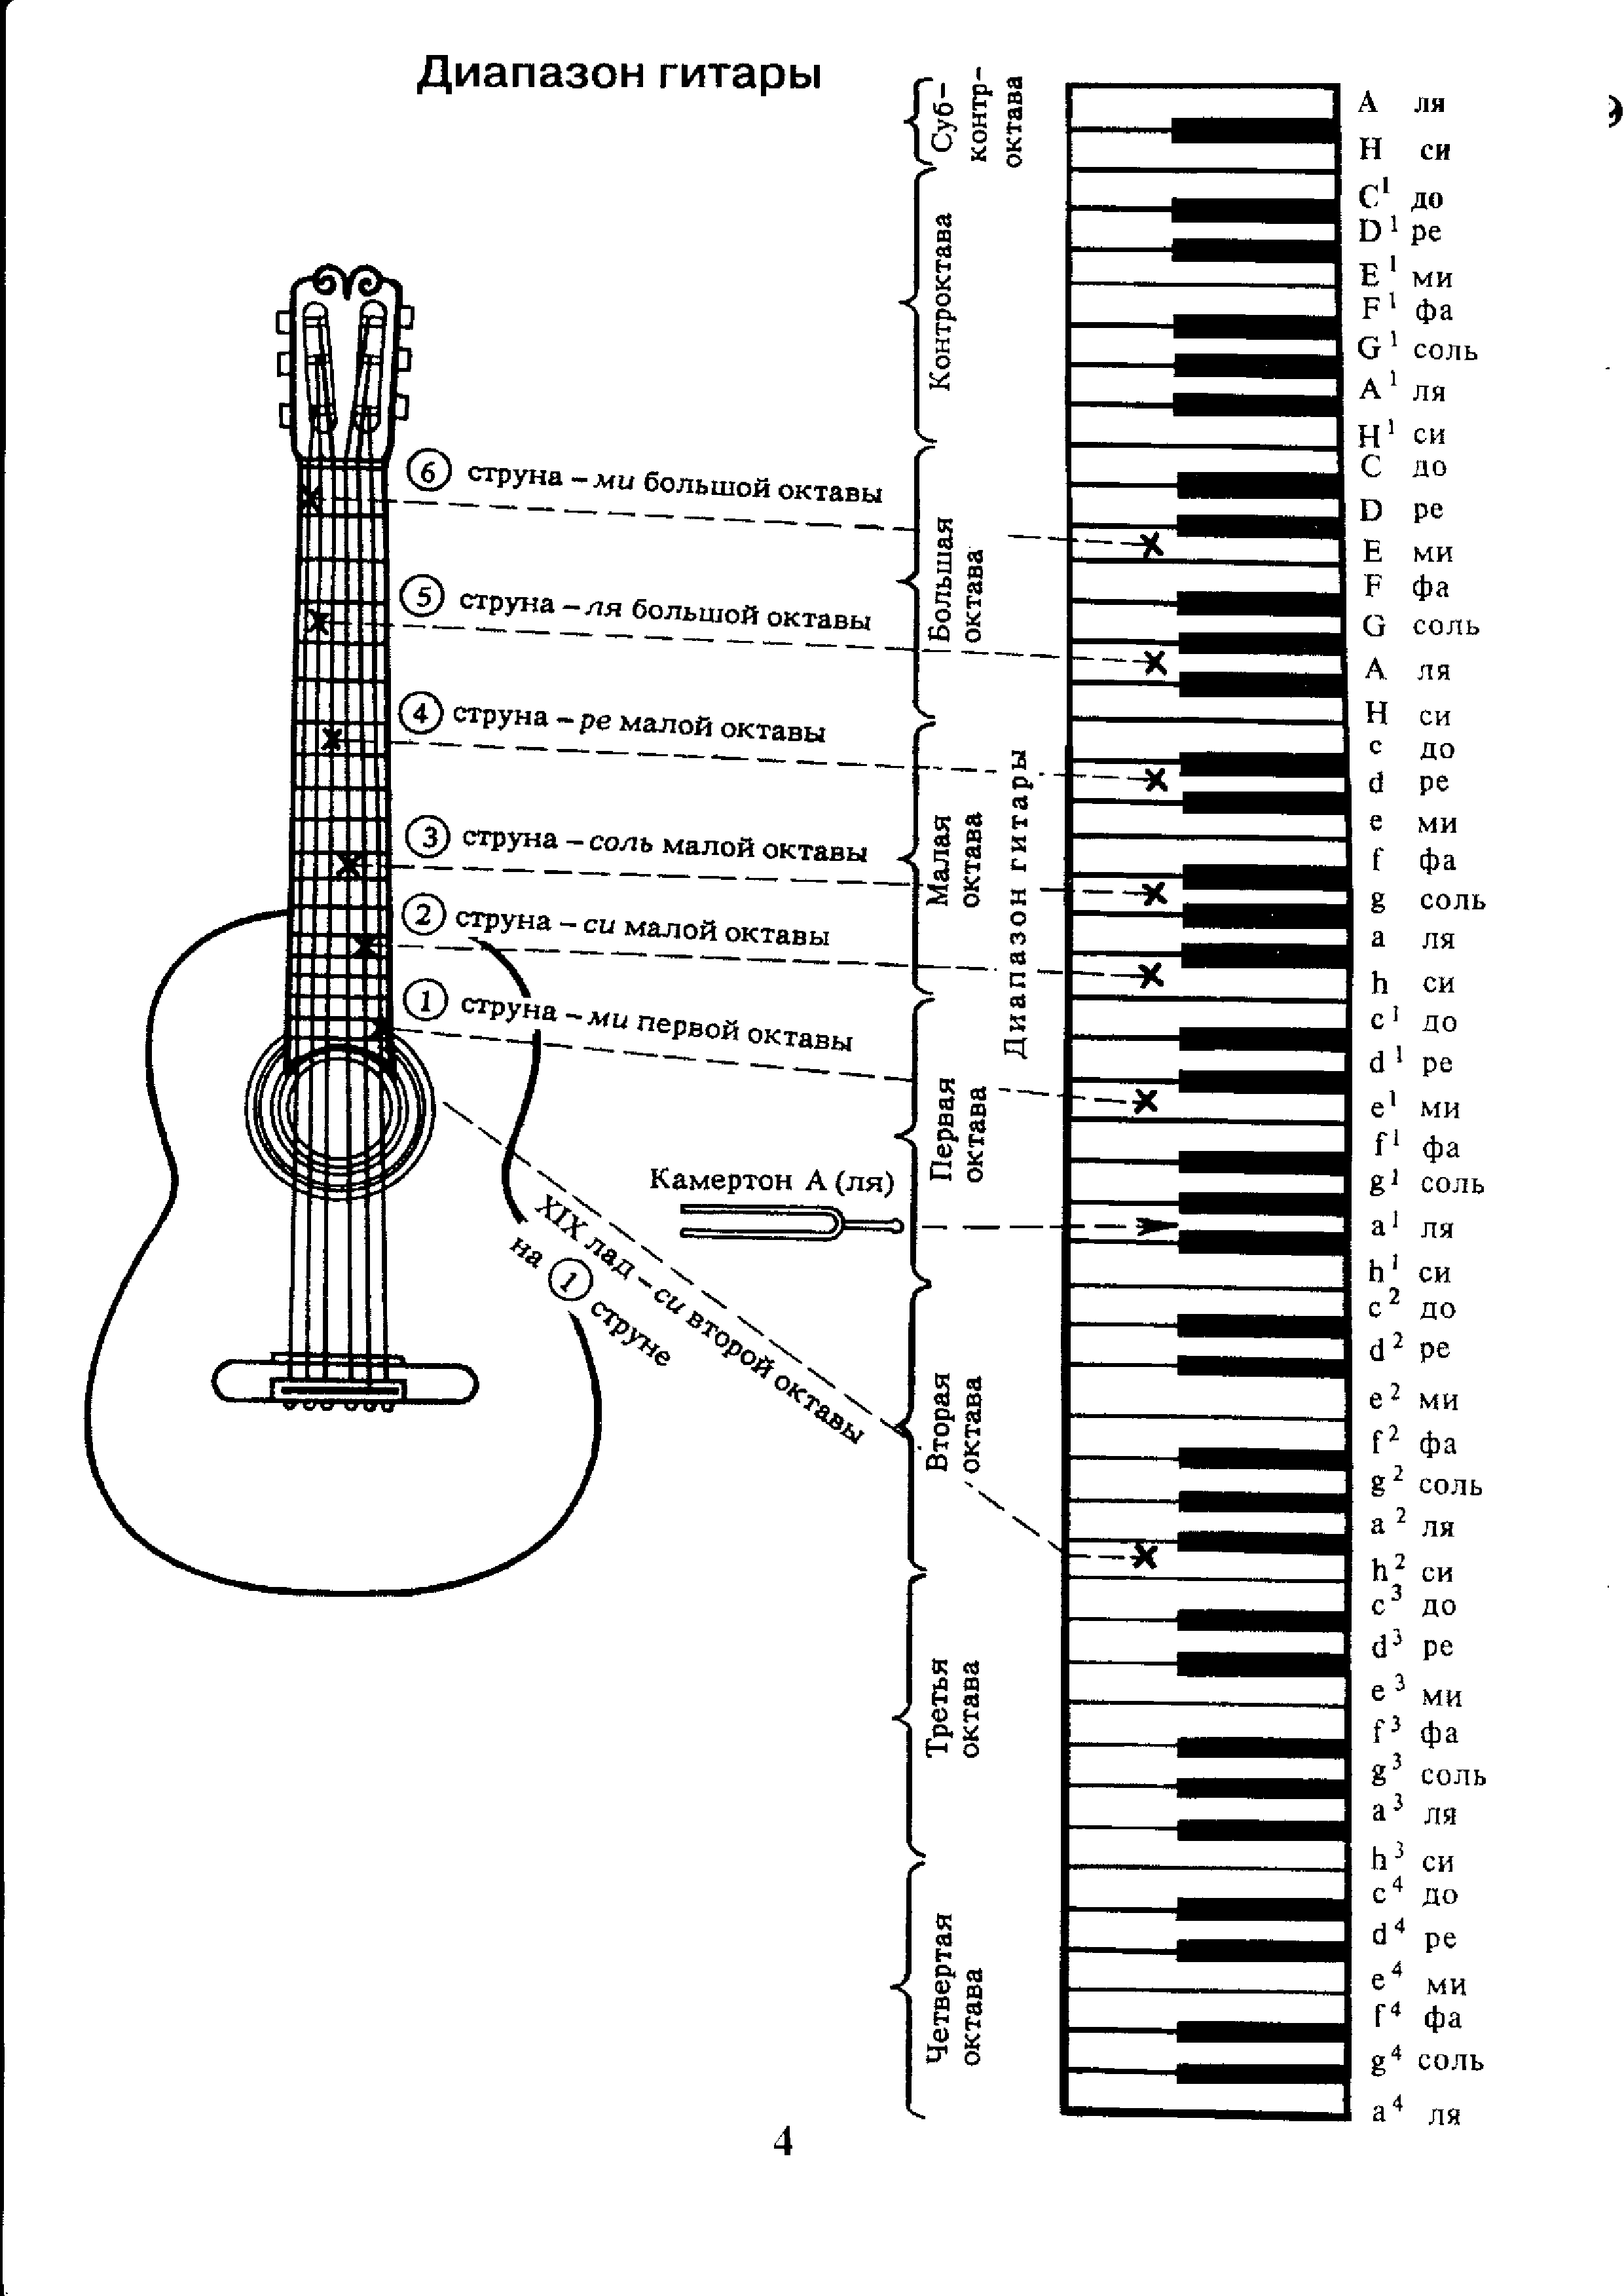 Первая струна гитары нота. Аппликатура аккордов для гитары 6 струн для начинающих. Ноты на гитарном грифе 6 струнной. Лады на 6 струнной гитаре для начинающих. Схема гитары классической 6 струнной.